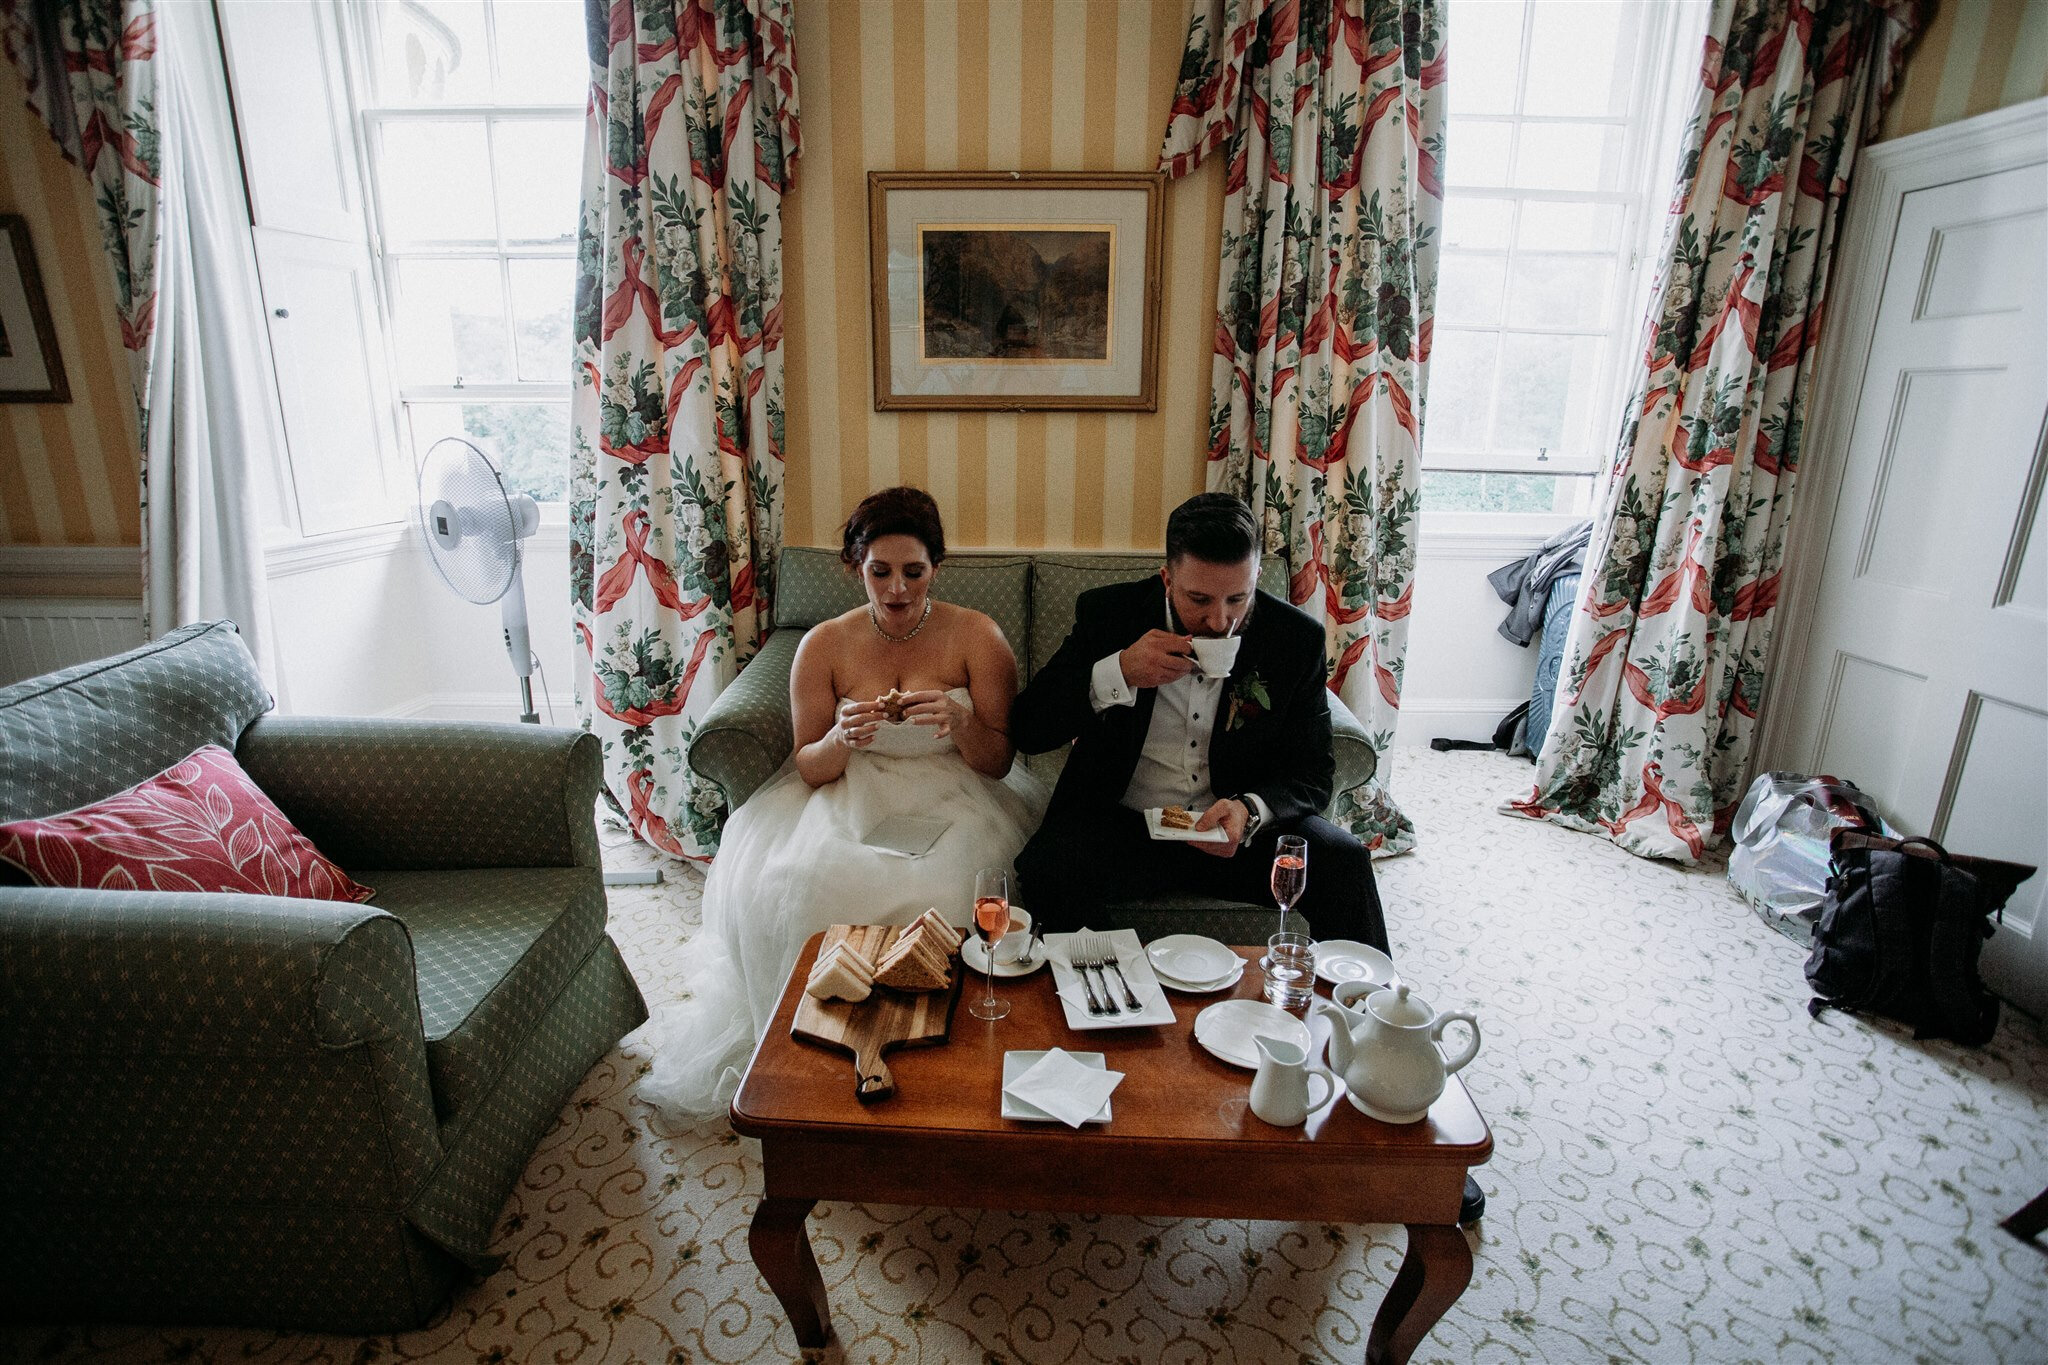 Culzean Castle Scotland elopement wedding lunch details in castle | adventure elopement photographer